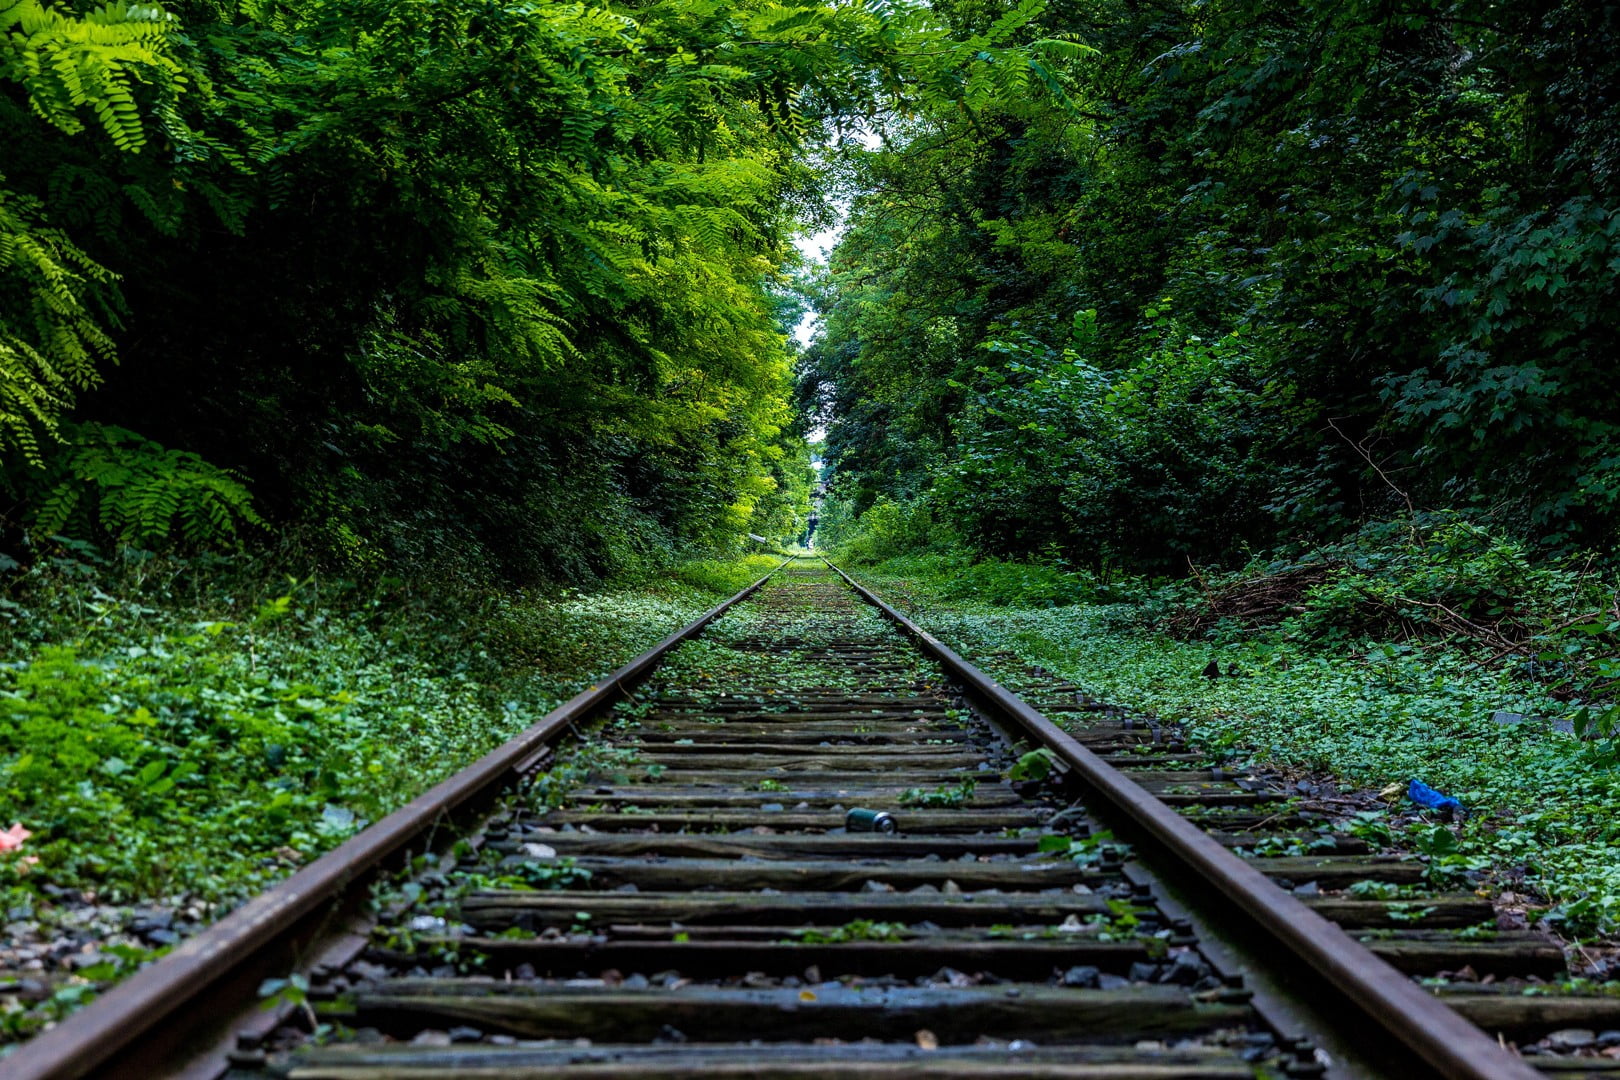 black rails, landscape, nature, railway, forest